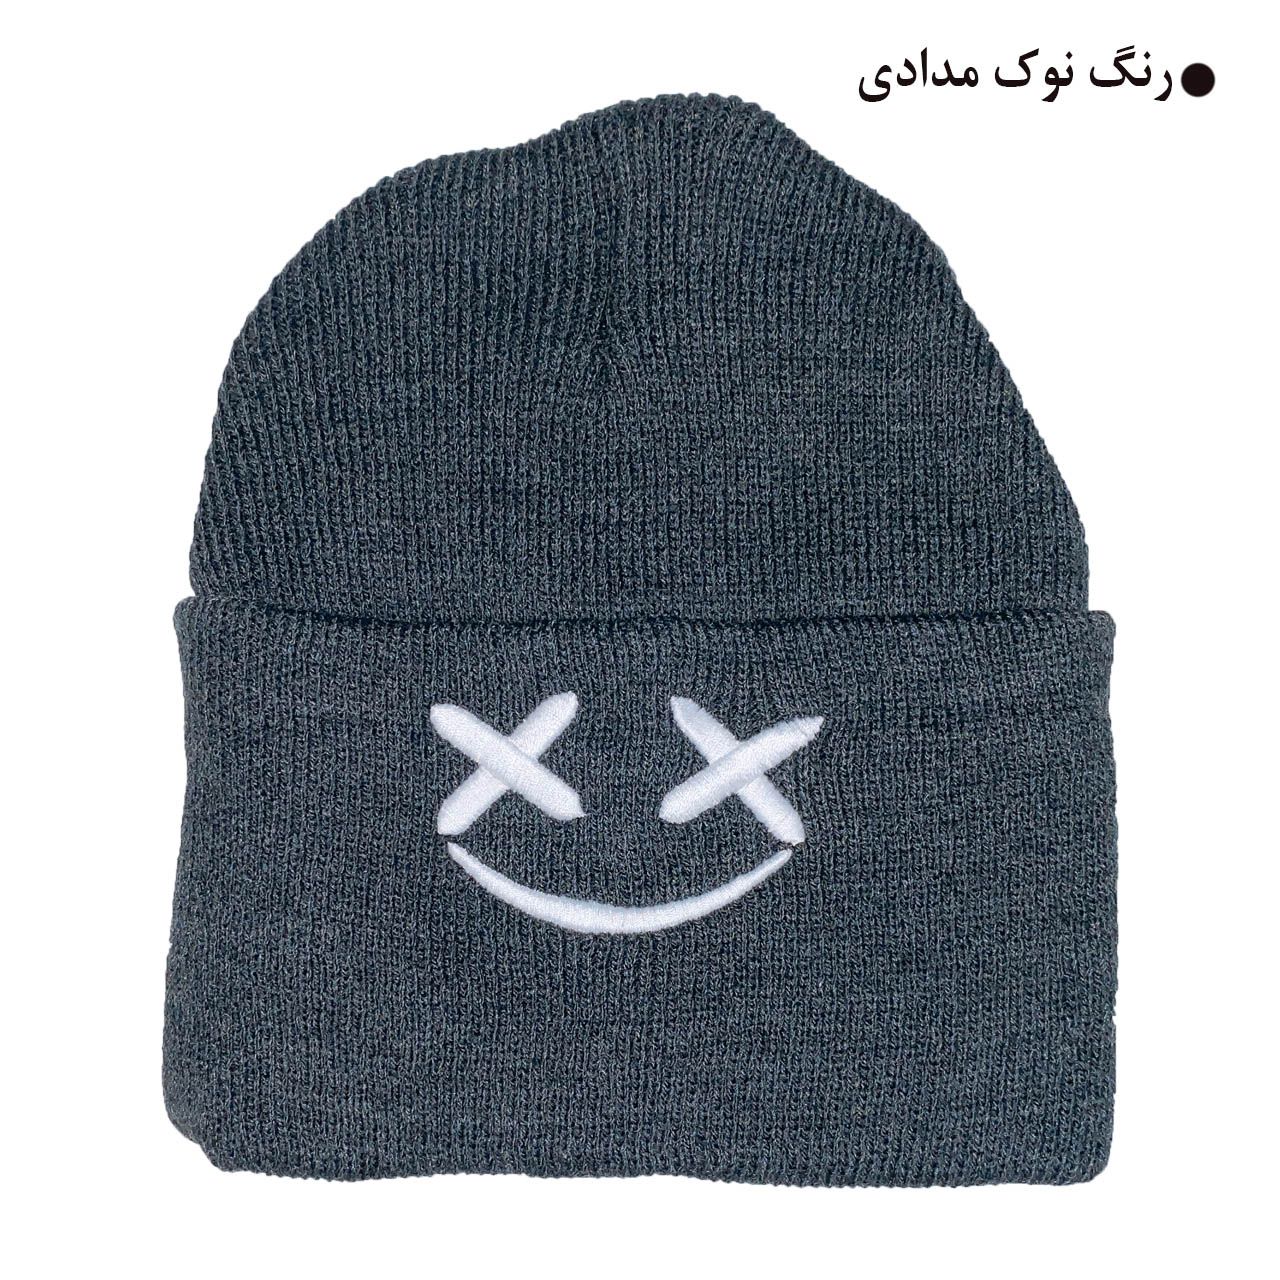 کلاه بافتنی مدل زمستانی طرح لبخند کد 121 -  - 7